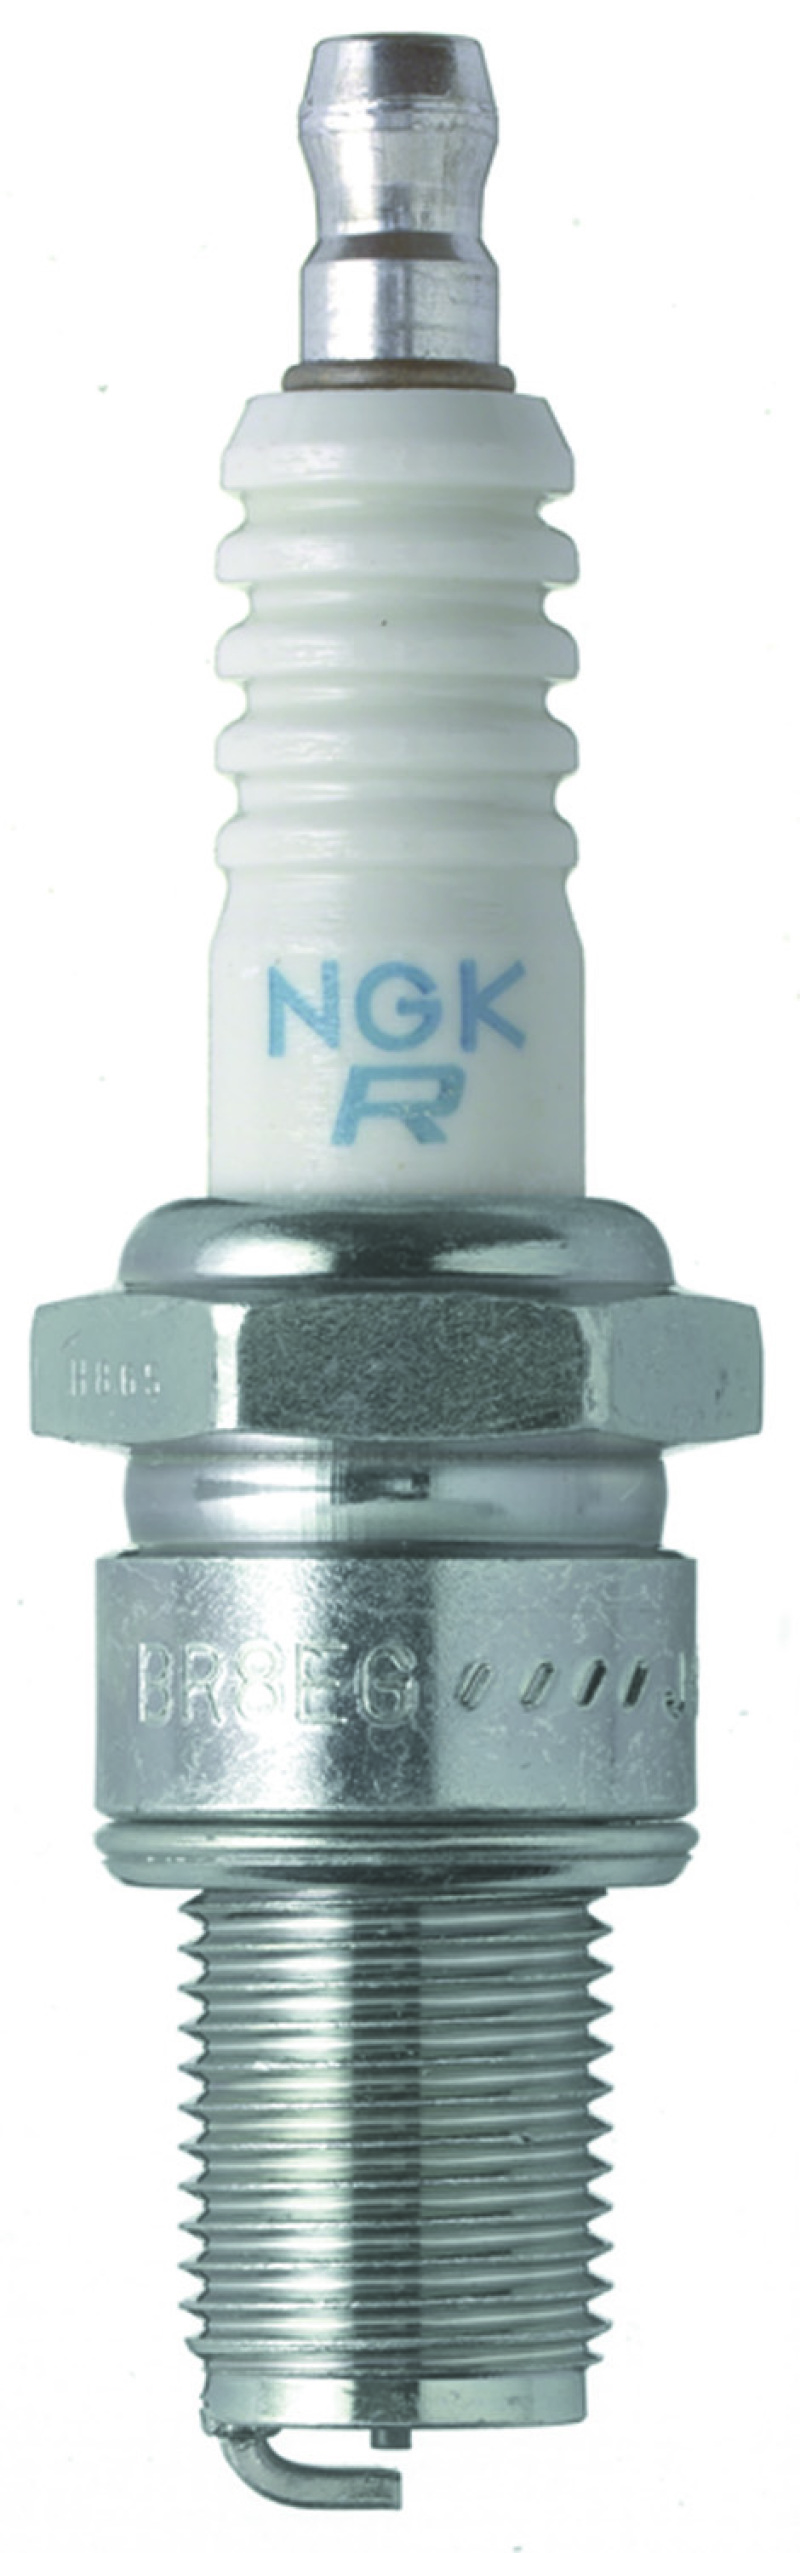 NGK Racing Spark Plug Box of 4 (BR8EG) - 3130